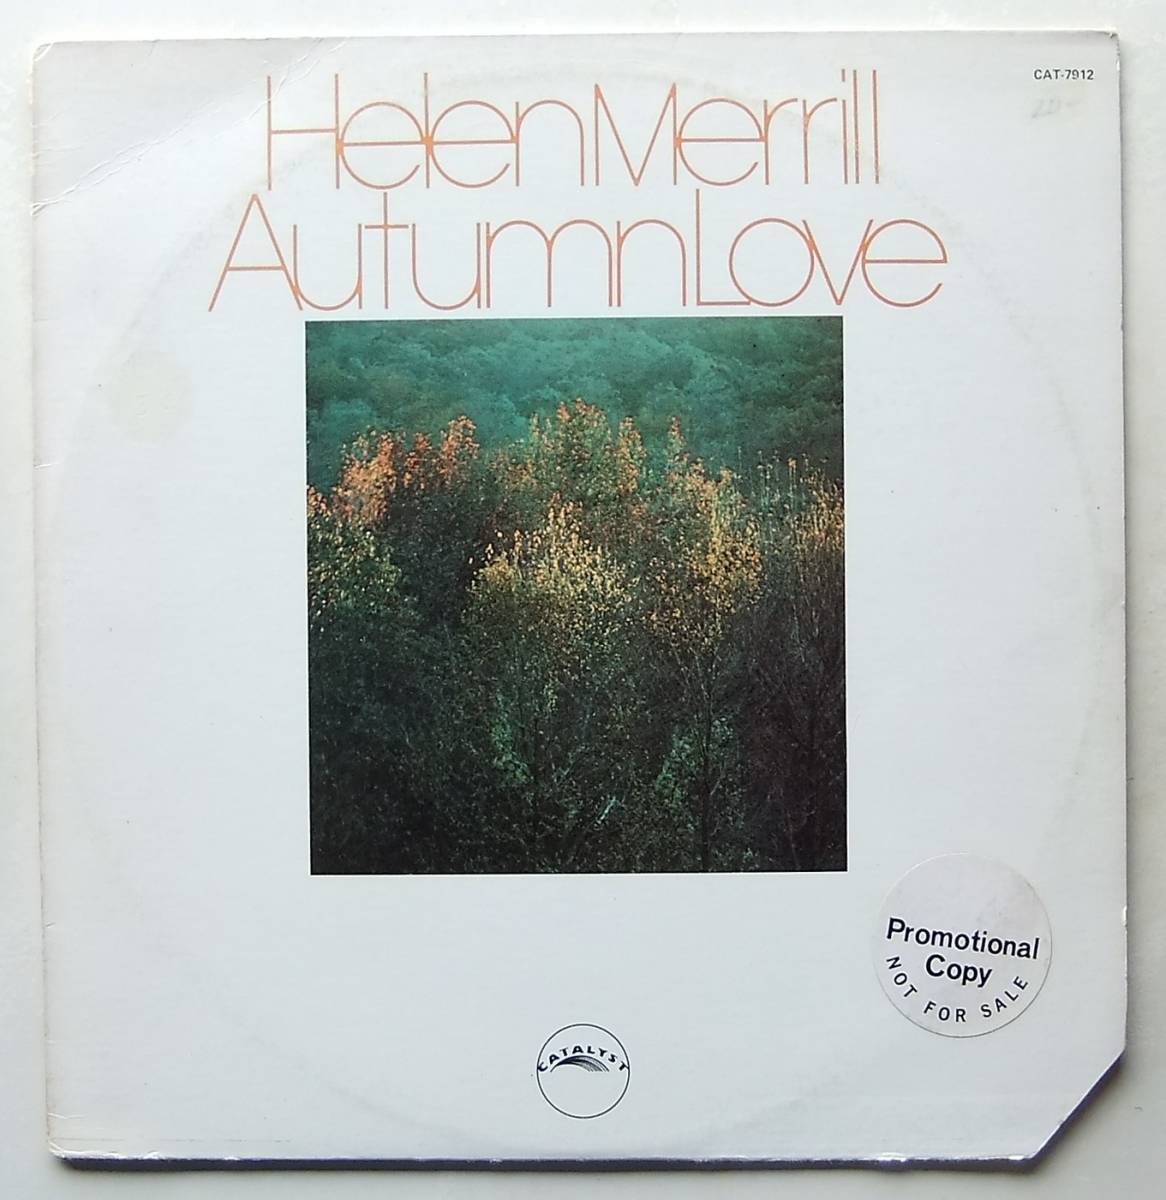 ◆ HELEN MERRILL / Autumn Love ◆ Catakyst CAT-7912 (promo) ◆_画像1